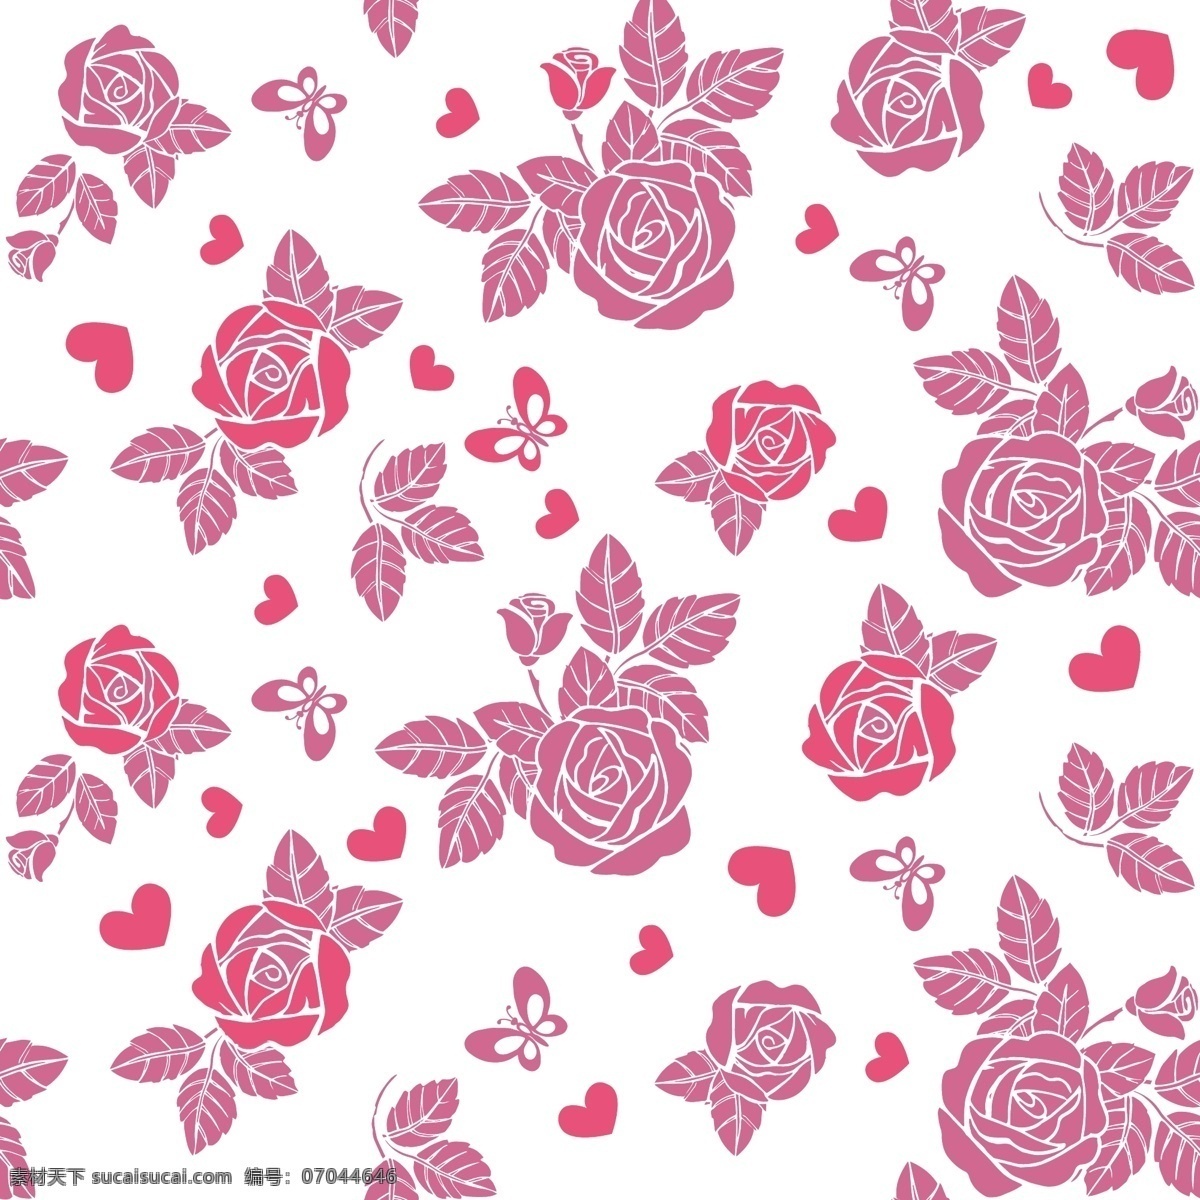 玫瑰花纹 玫瑰花 情人节素材 蔷薇植物 玫瑰 玫瑰花朵 花草树木 生物世界 花草